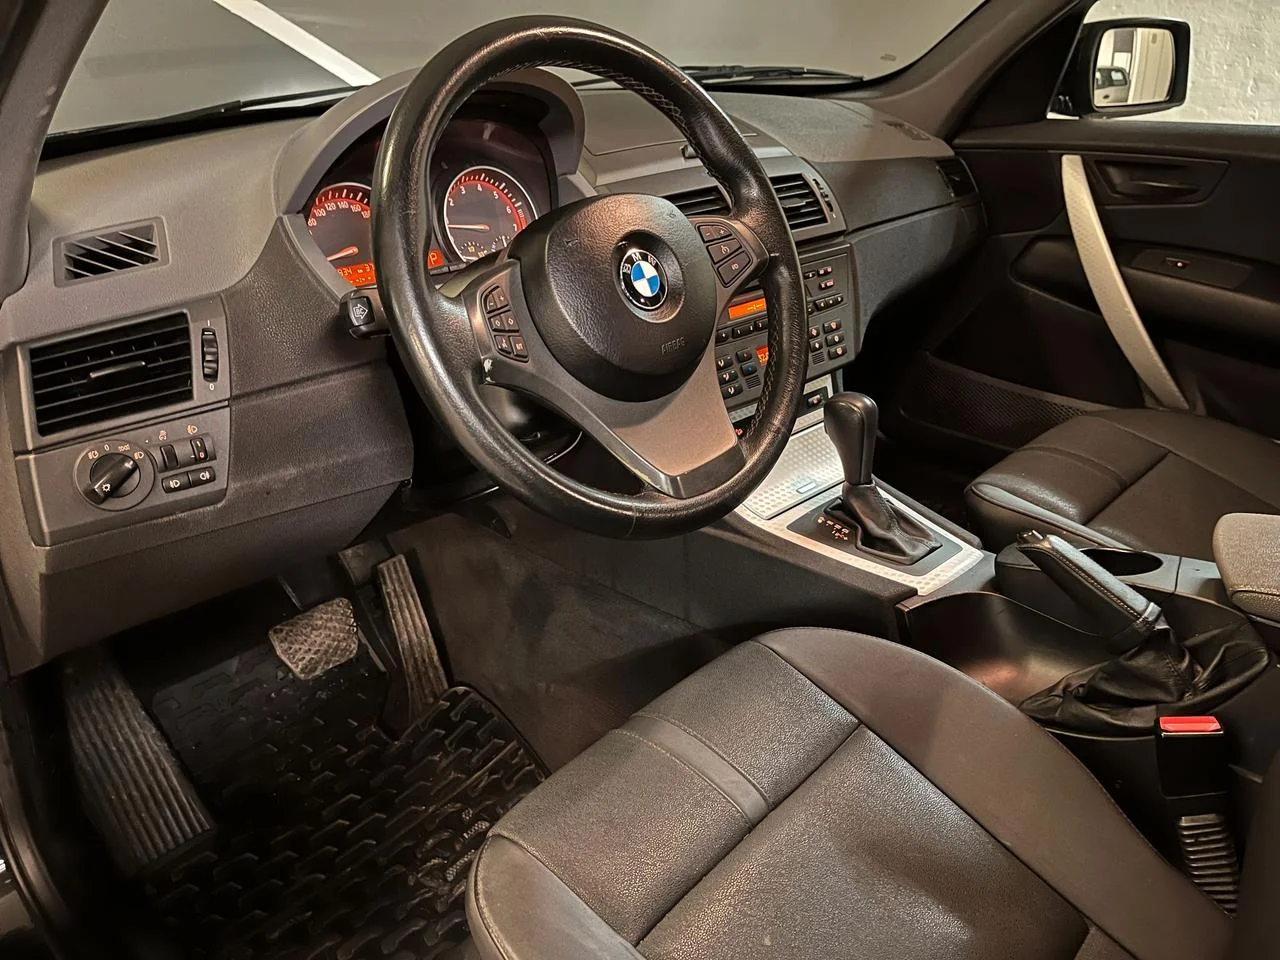 BMW X3 2.5i Automatisk, 192hk, 2004